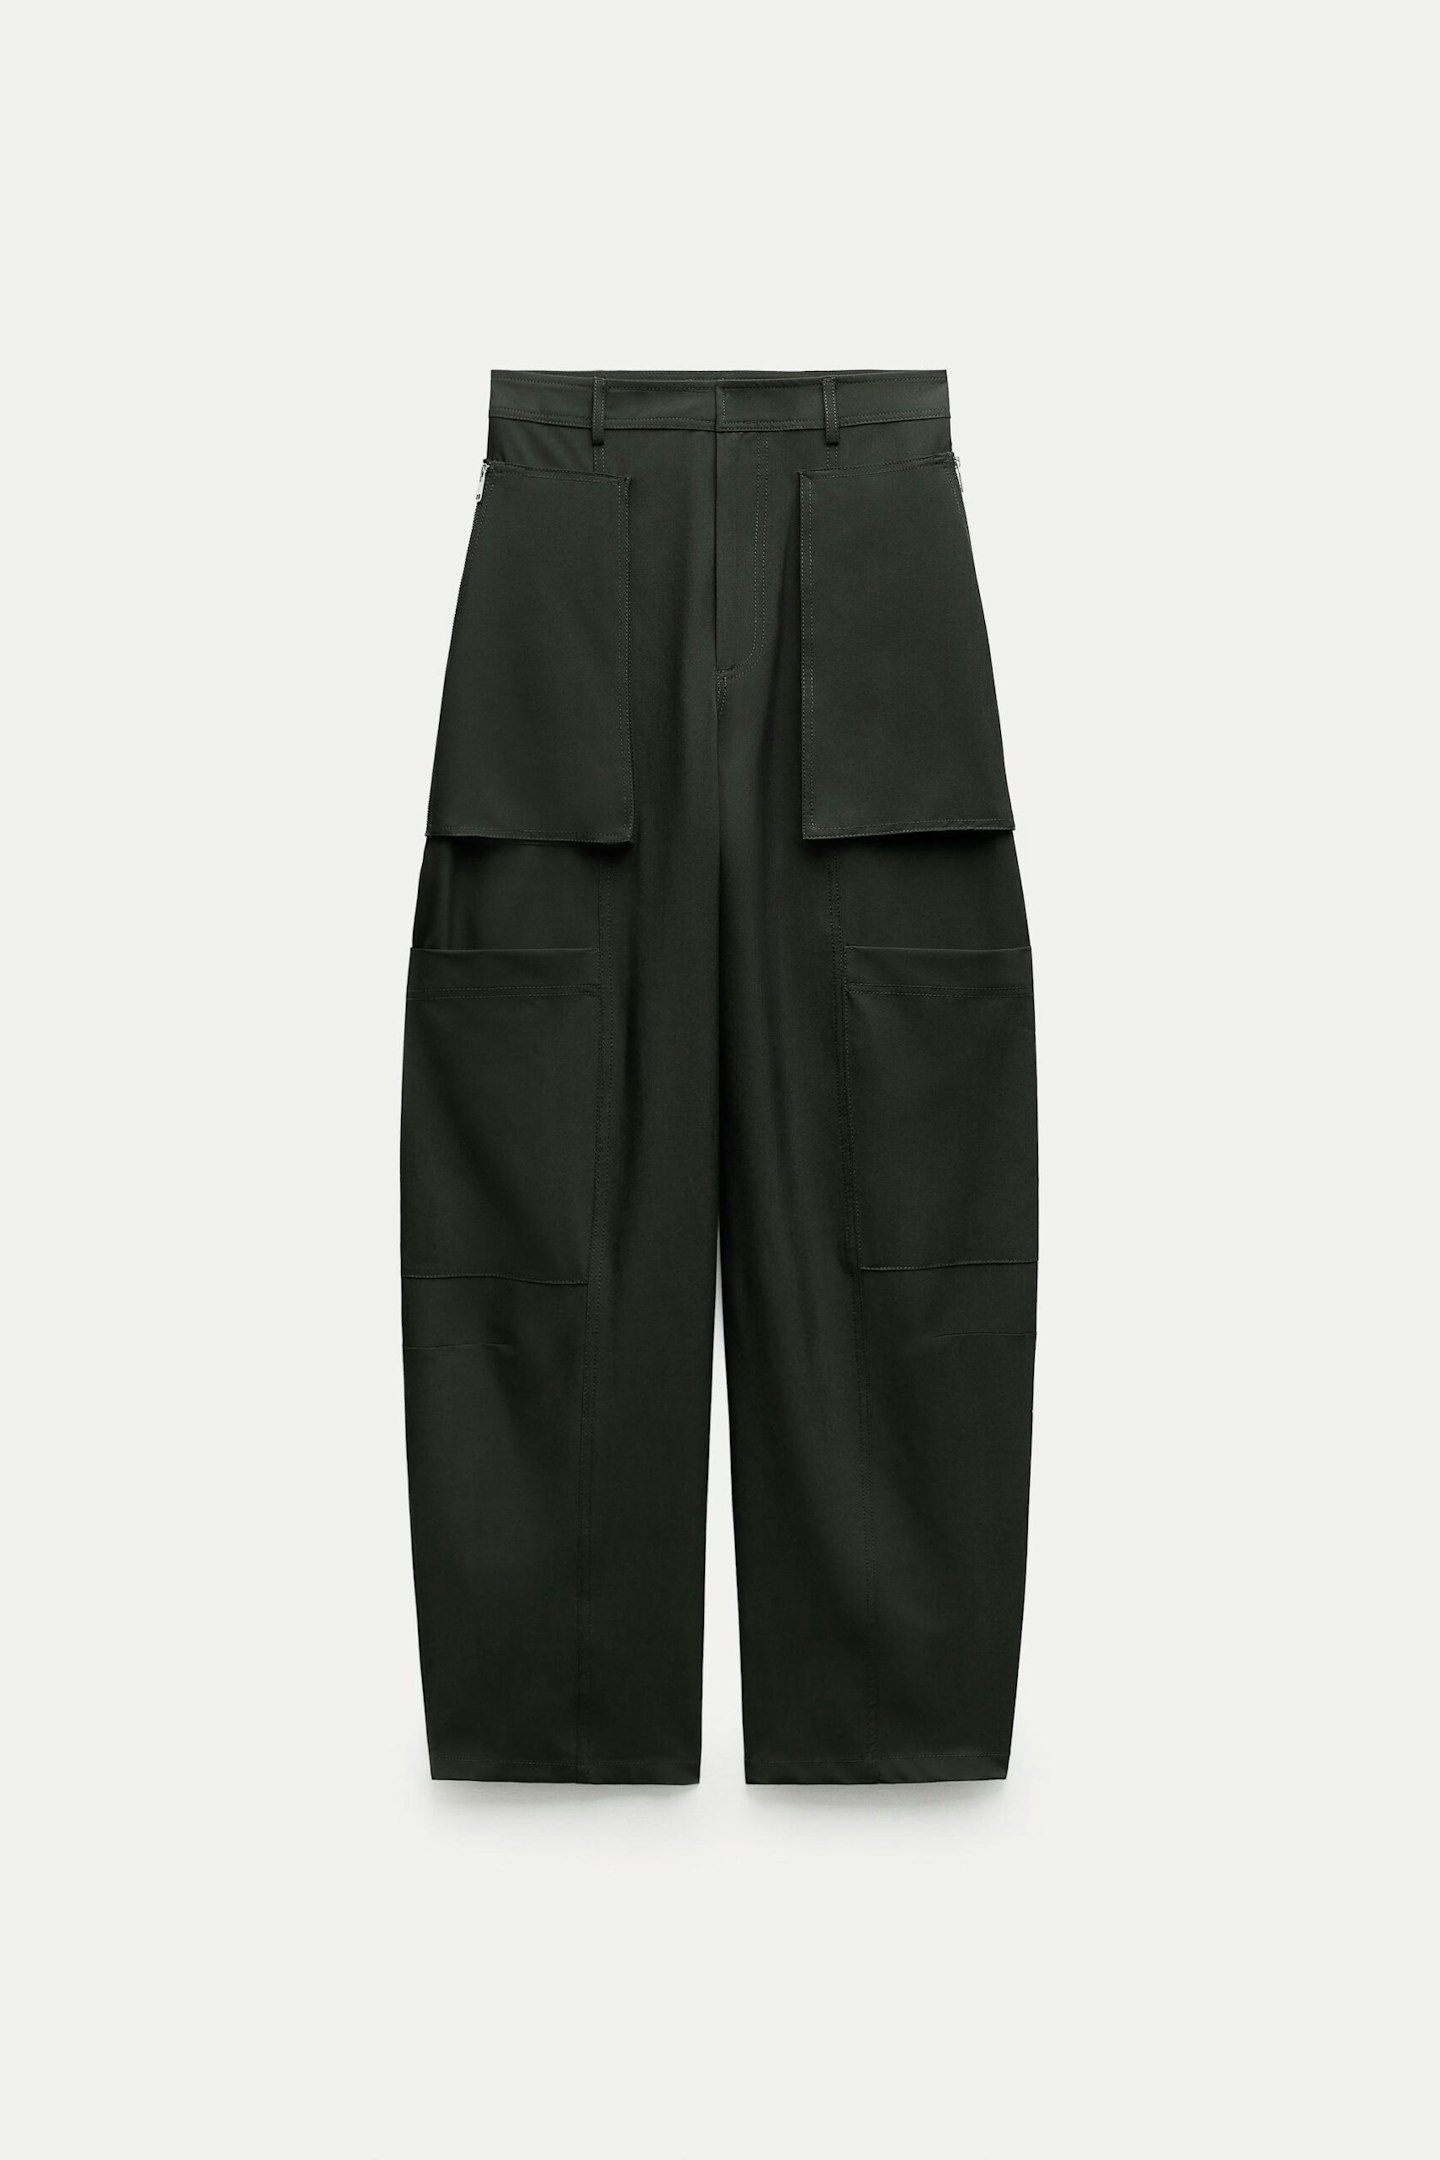 Zara, Cargo Trousers With Zips